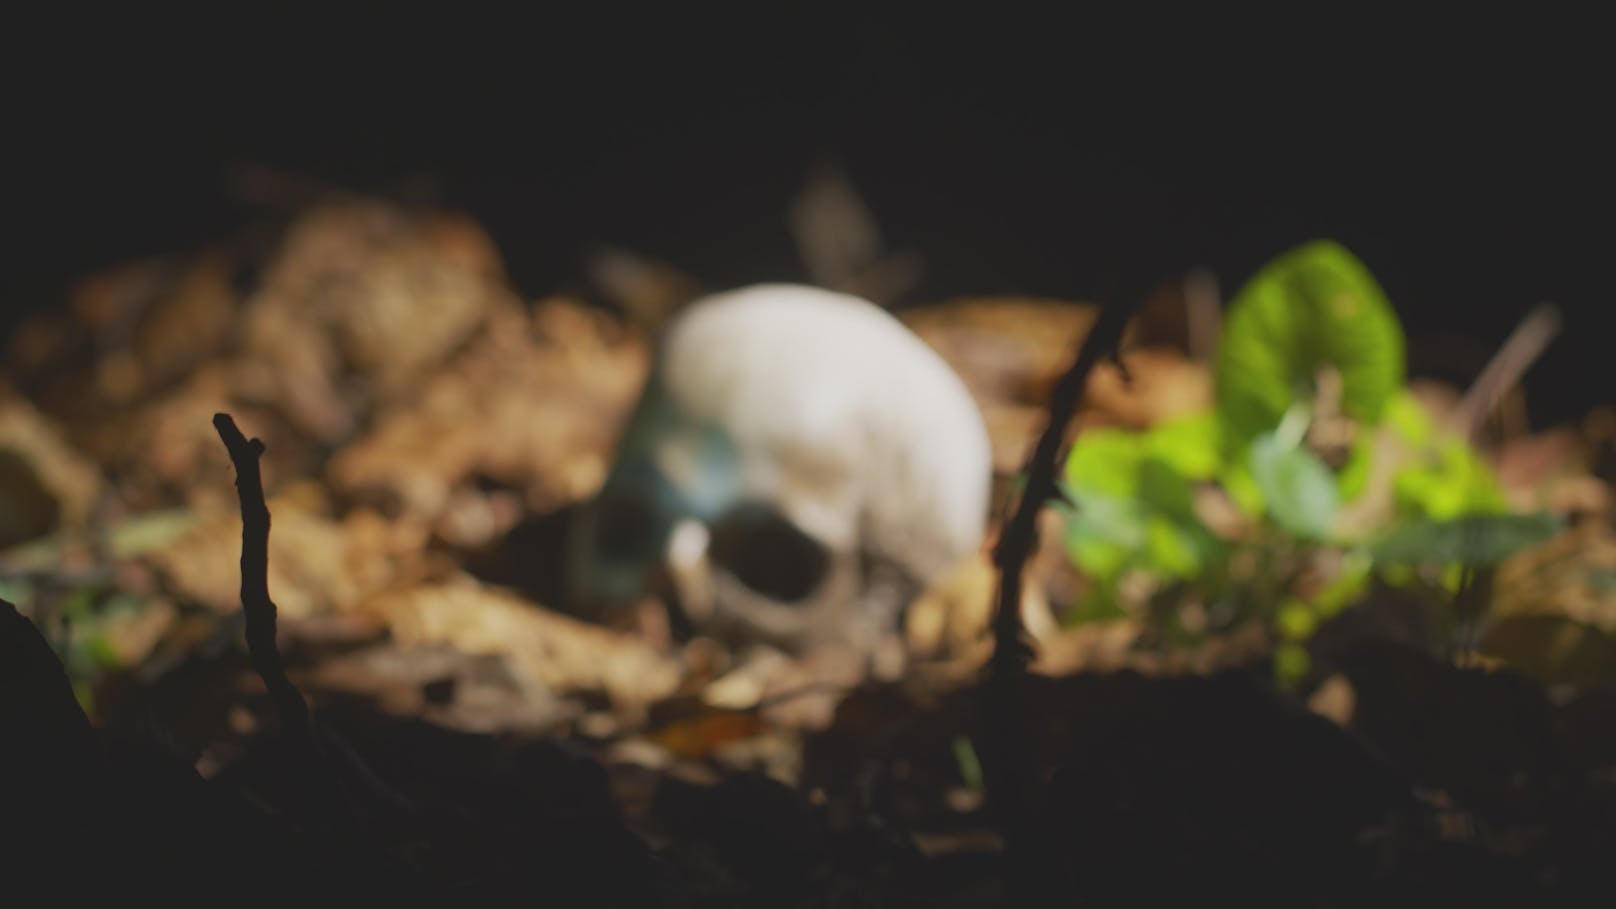 Menschen-Knochen – Jäger macht im Wald gruseligen Fund